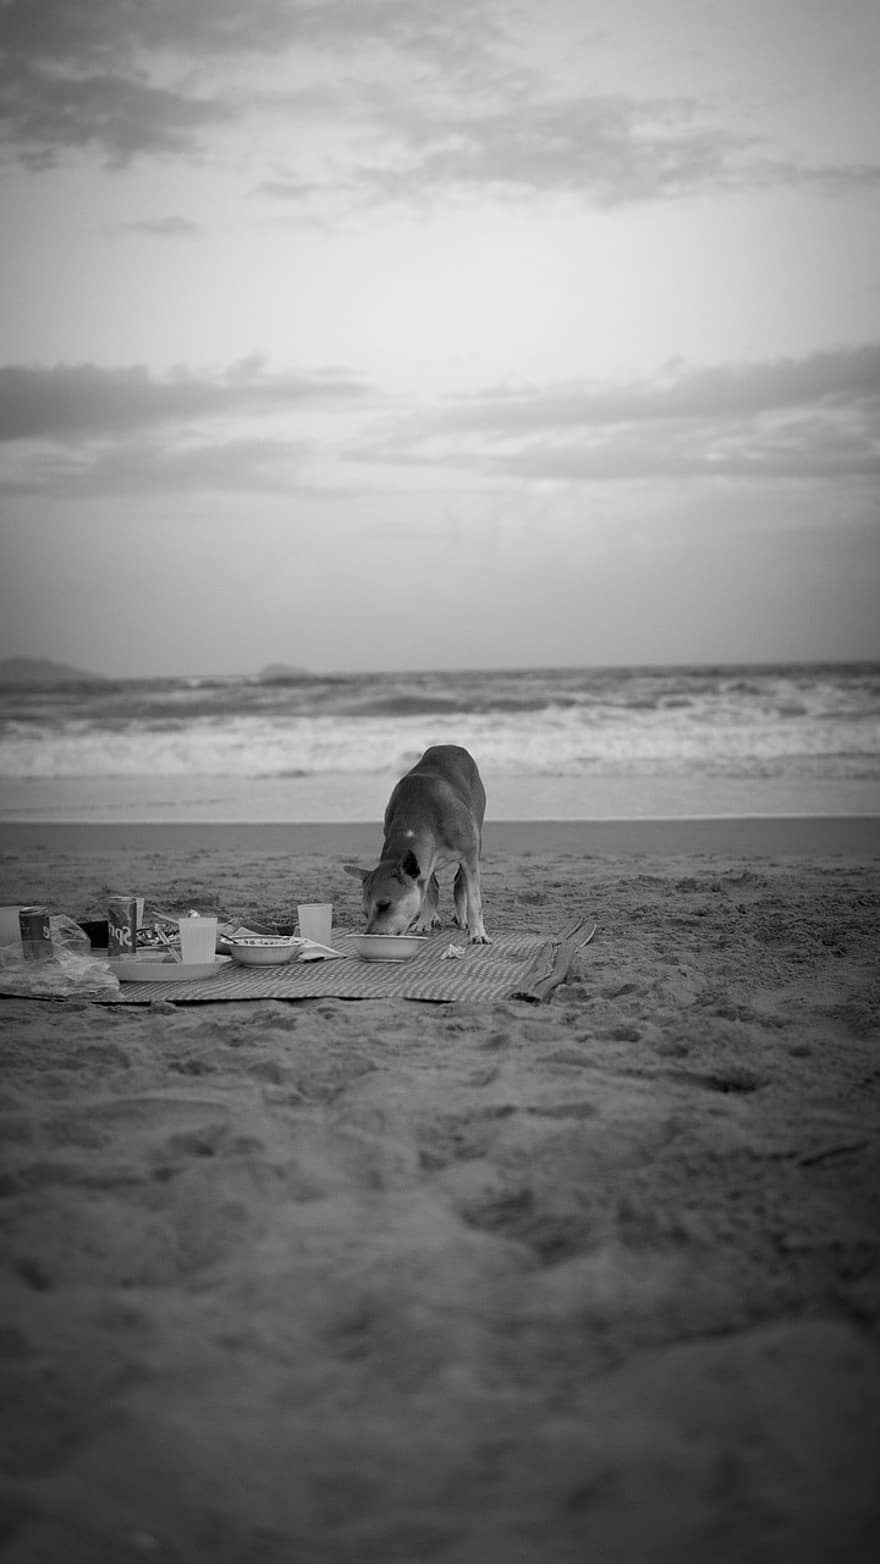 σκύλος, παραλία, η δυση του ηλιου, ακτή, τοπίο, ωκεανός, φύση, θάλασσα, νεφελώδης